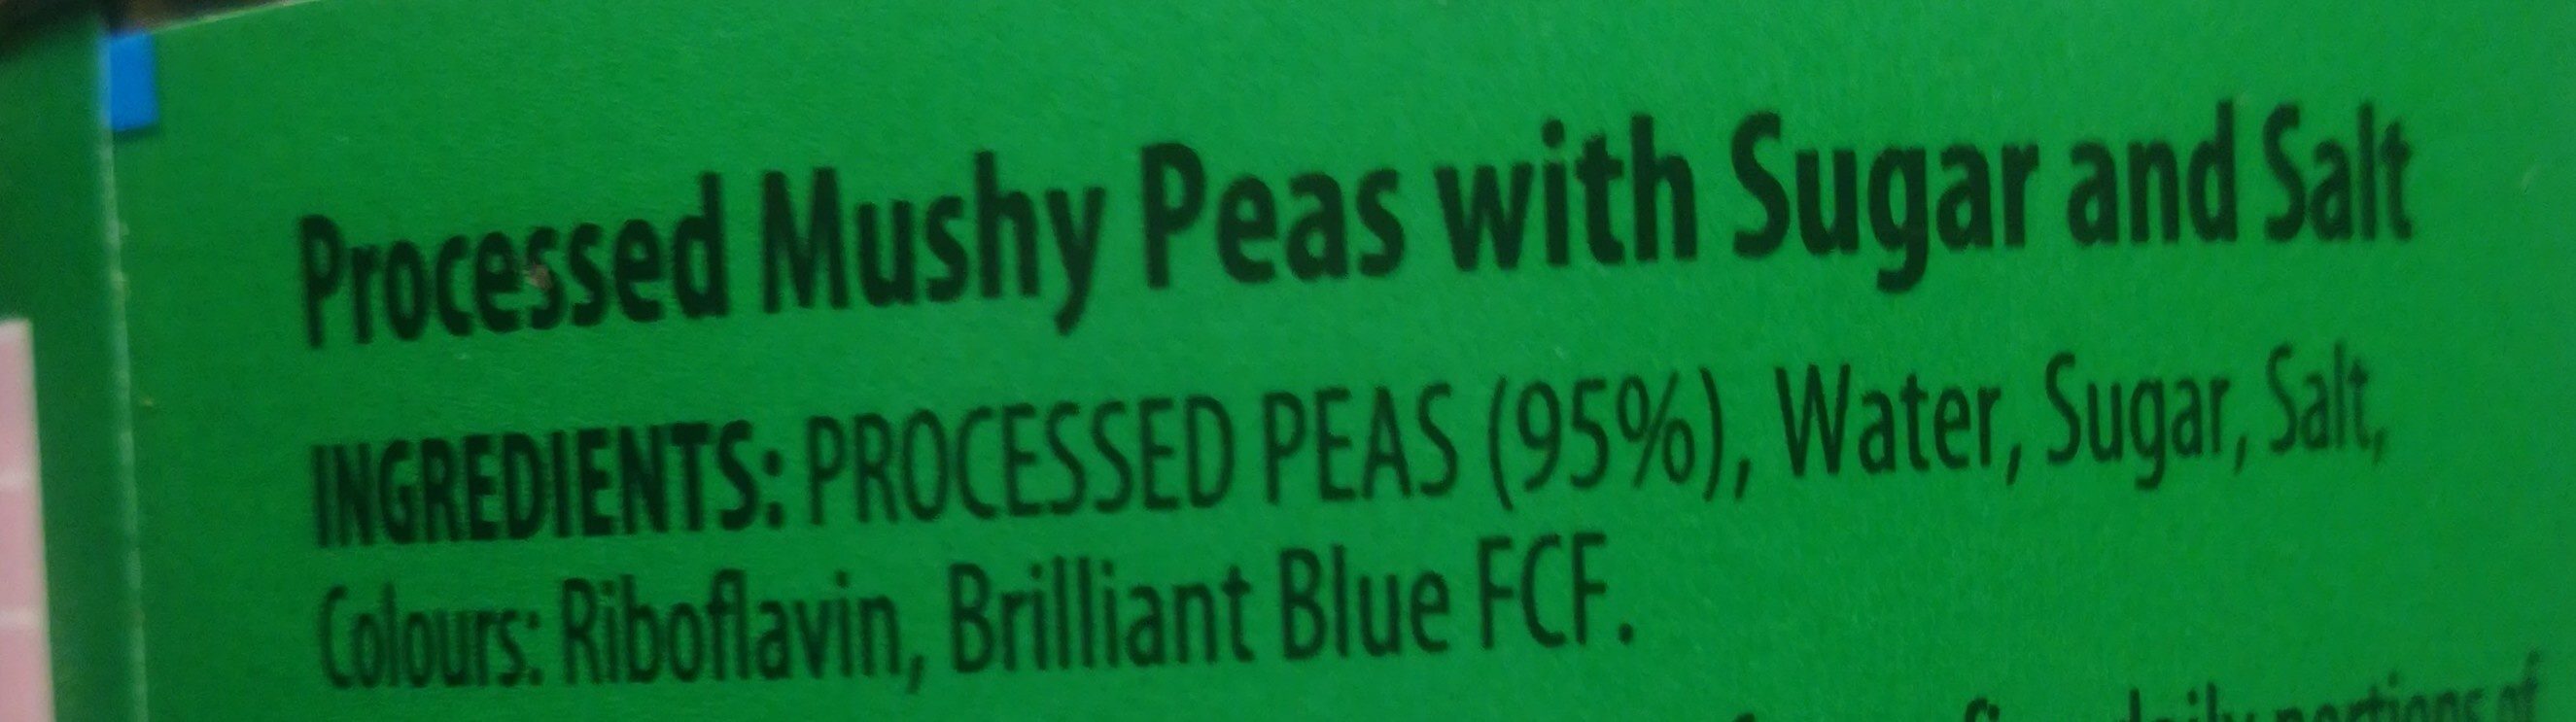 Mushy peas - Ingredients - fr